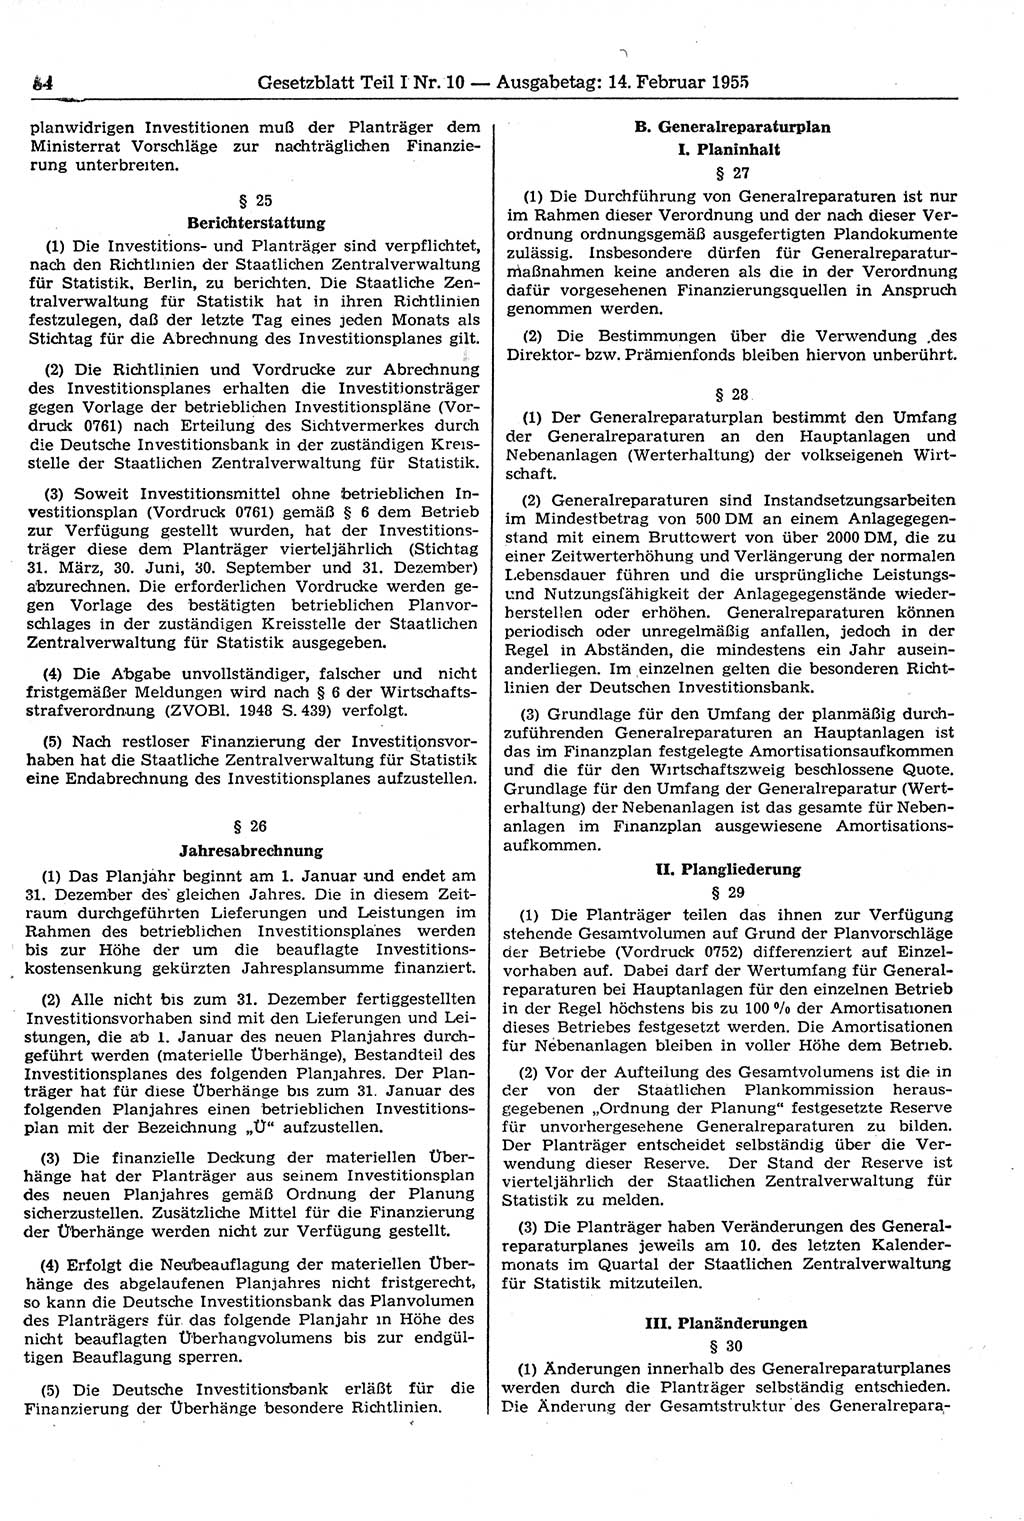 Gesetzblatt (GBl.) der Deutschen Demokratischen Republik (DDR) Teil Ⅰ 1955, Seite 84 (GBl. DDR Ⅰ 1955, S. 84)